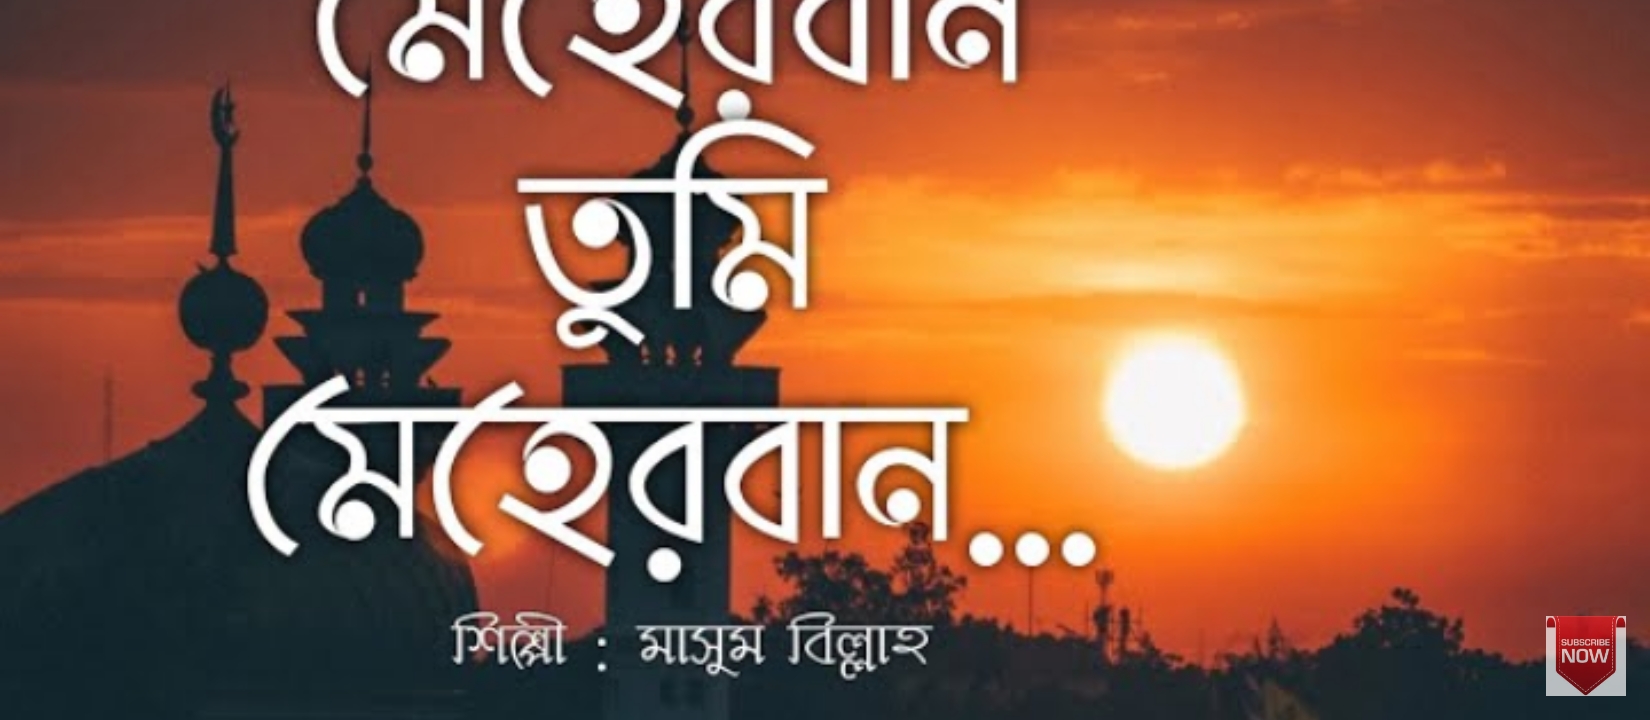 মেহেরবান তুমি মেহেরবান গজল লিরিক্স | Meherban Tumi Meherban Gojol Lyrics